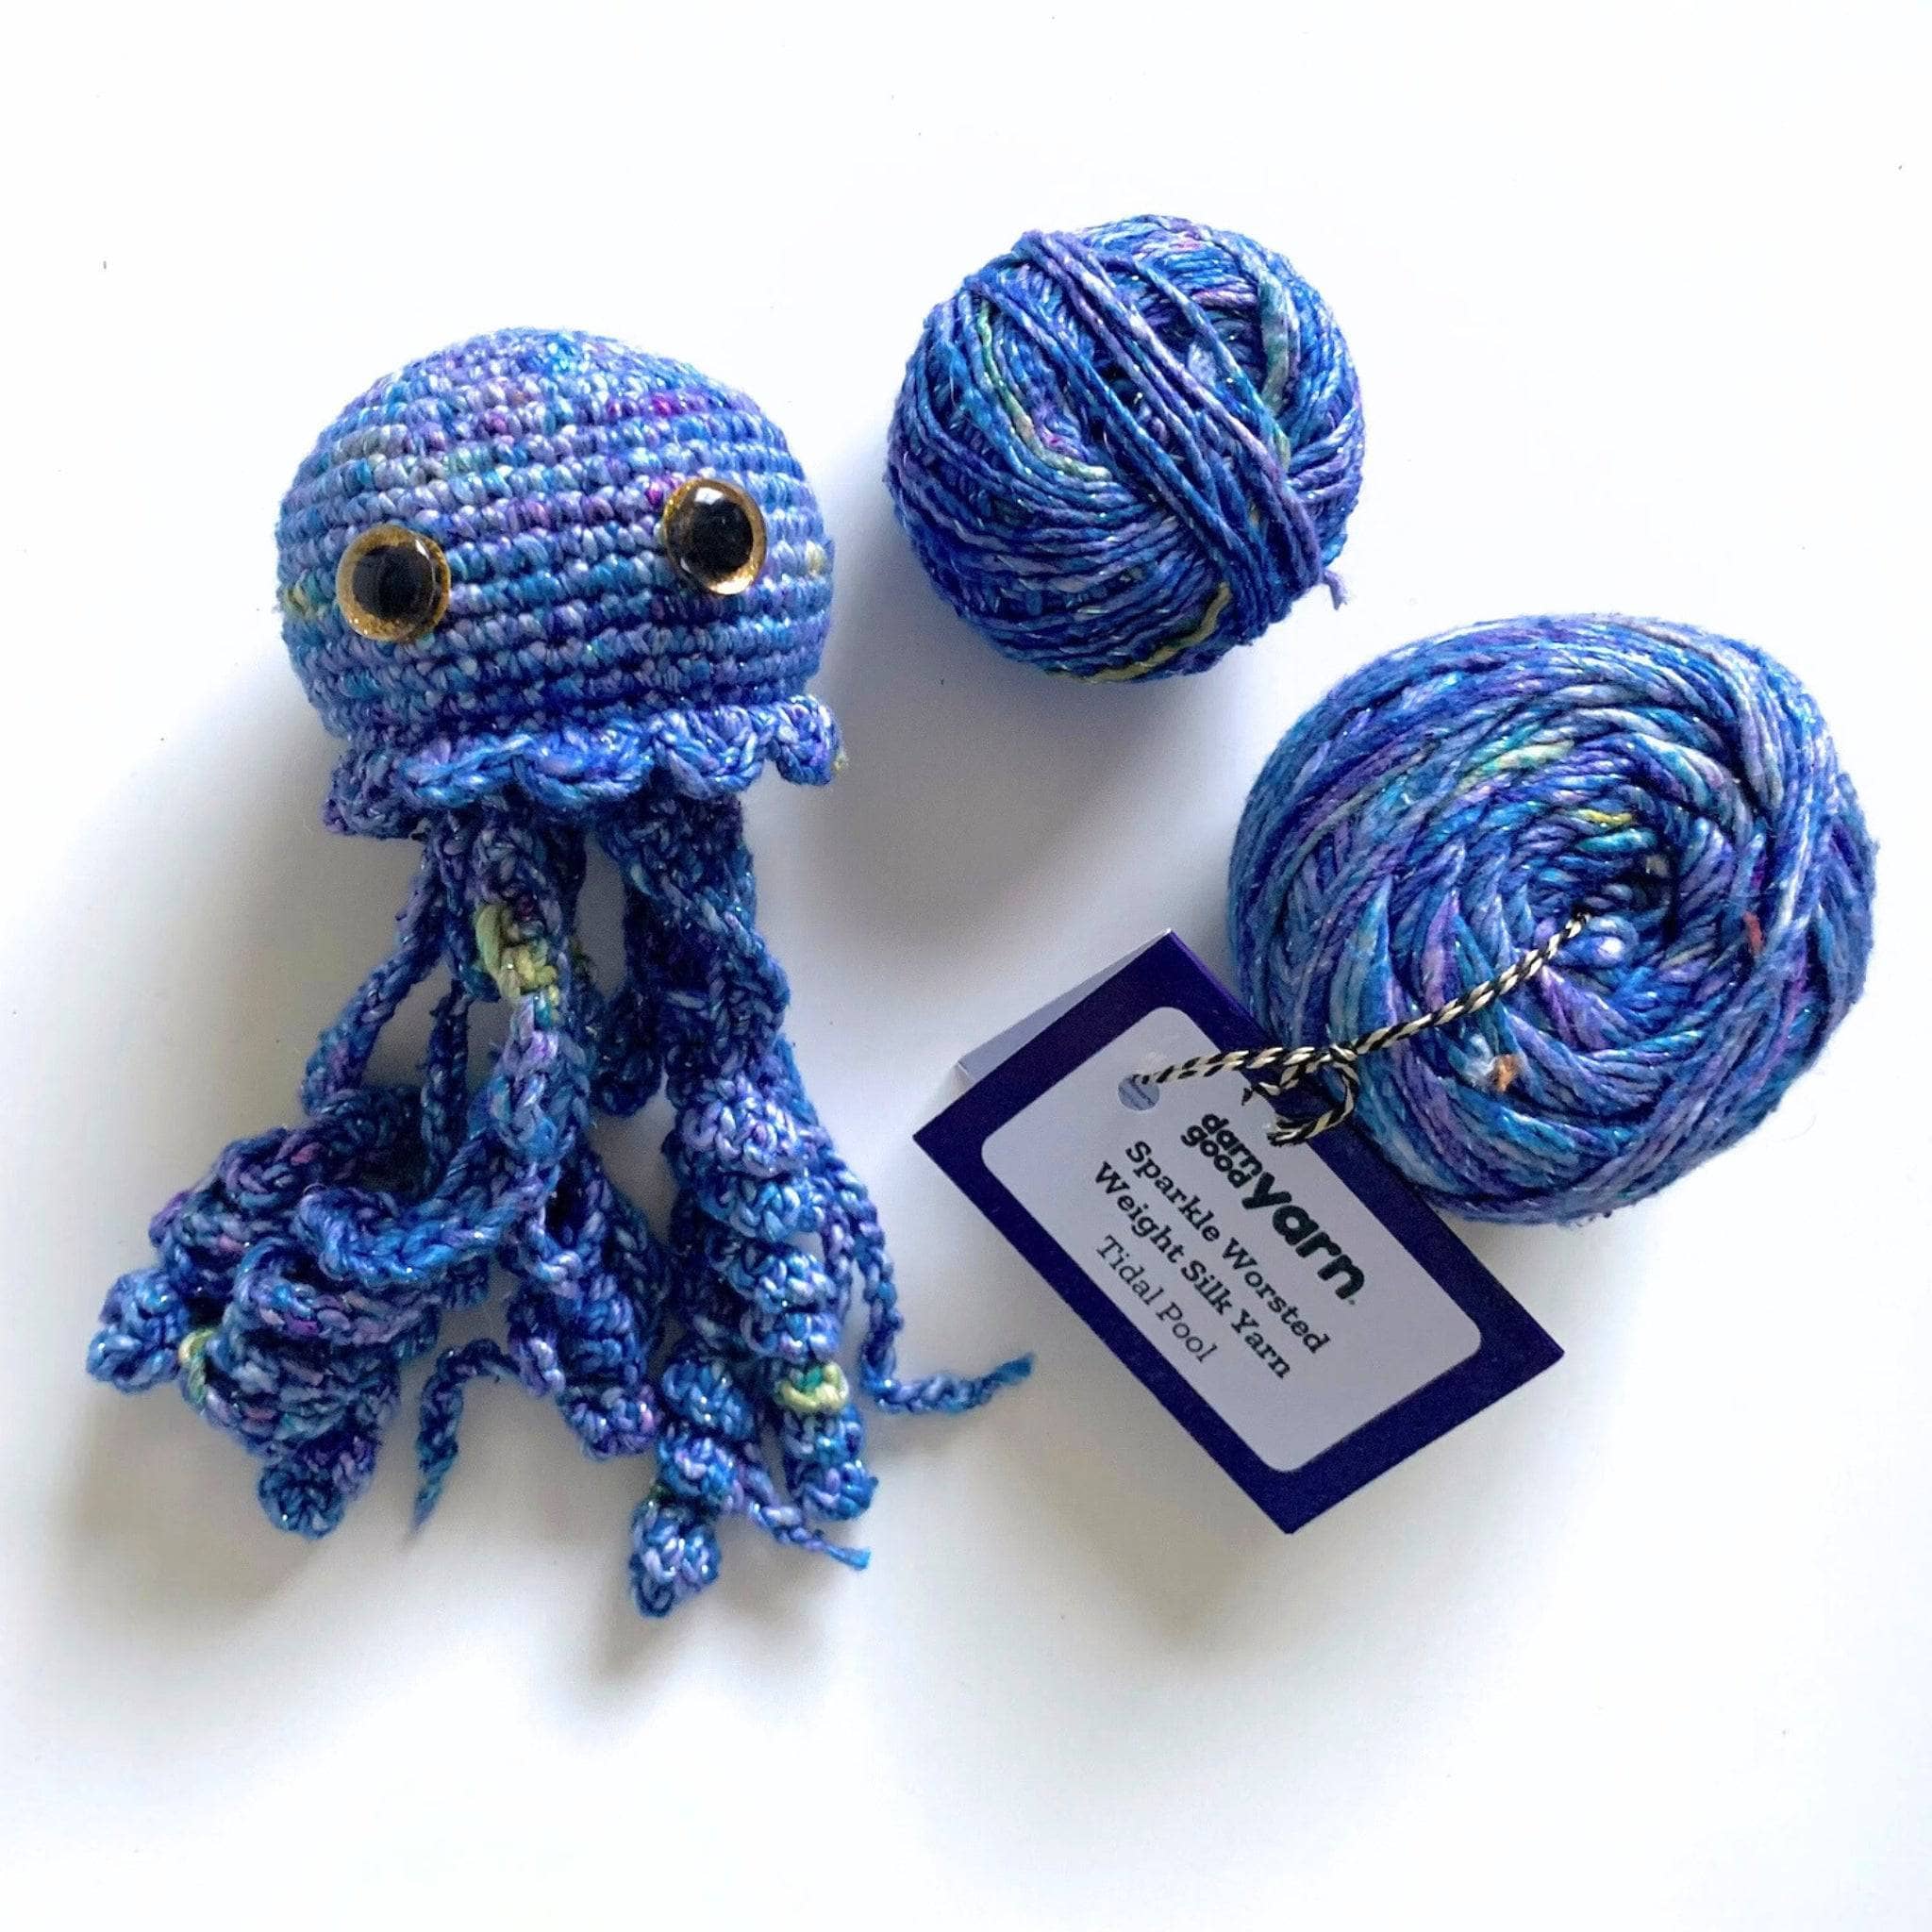 What Is Crochet Yarn Called? – Darn Good Yarn